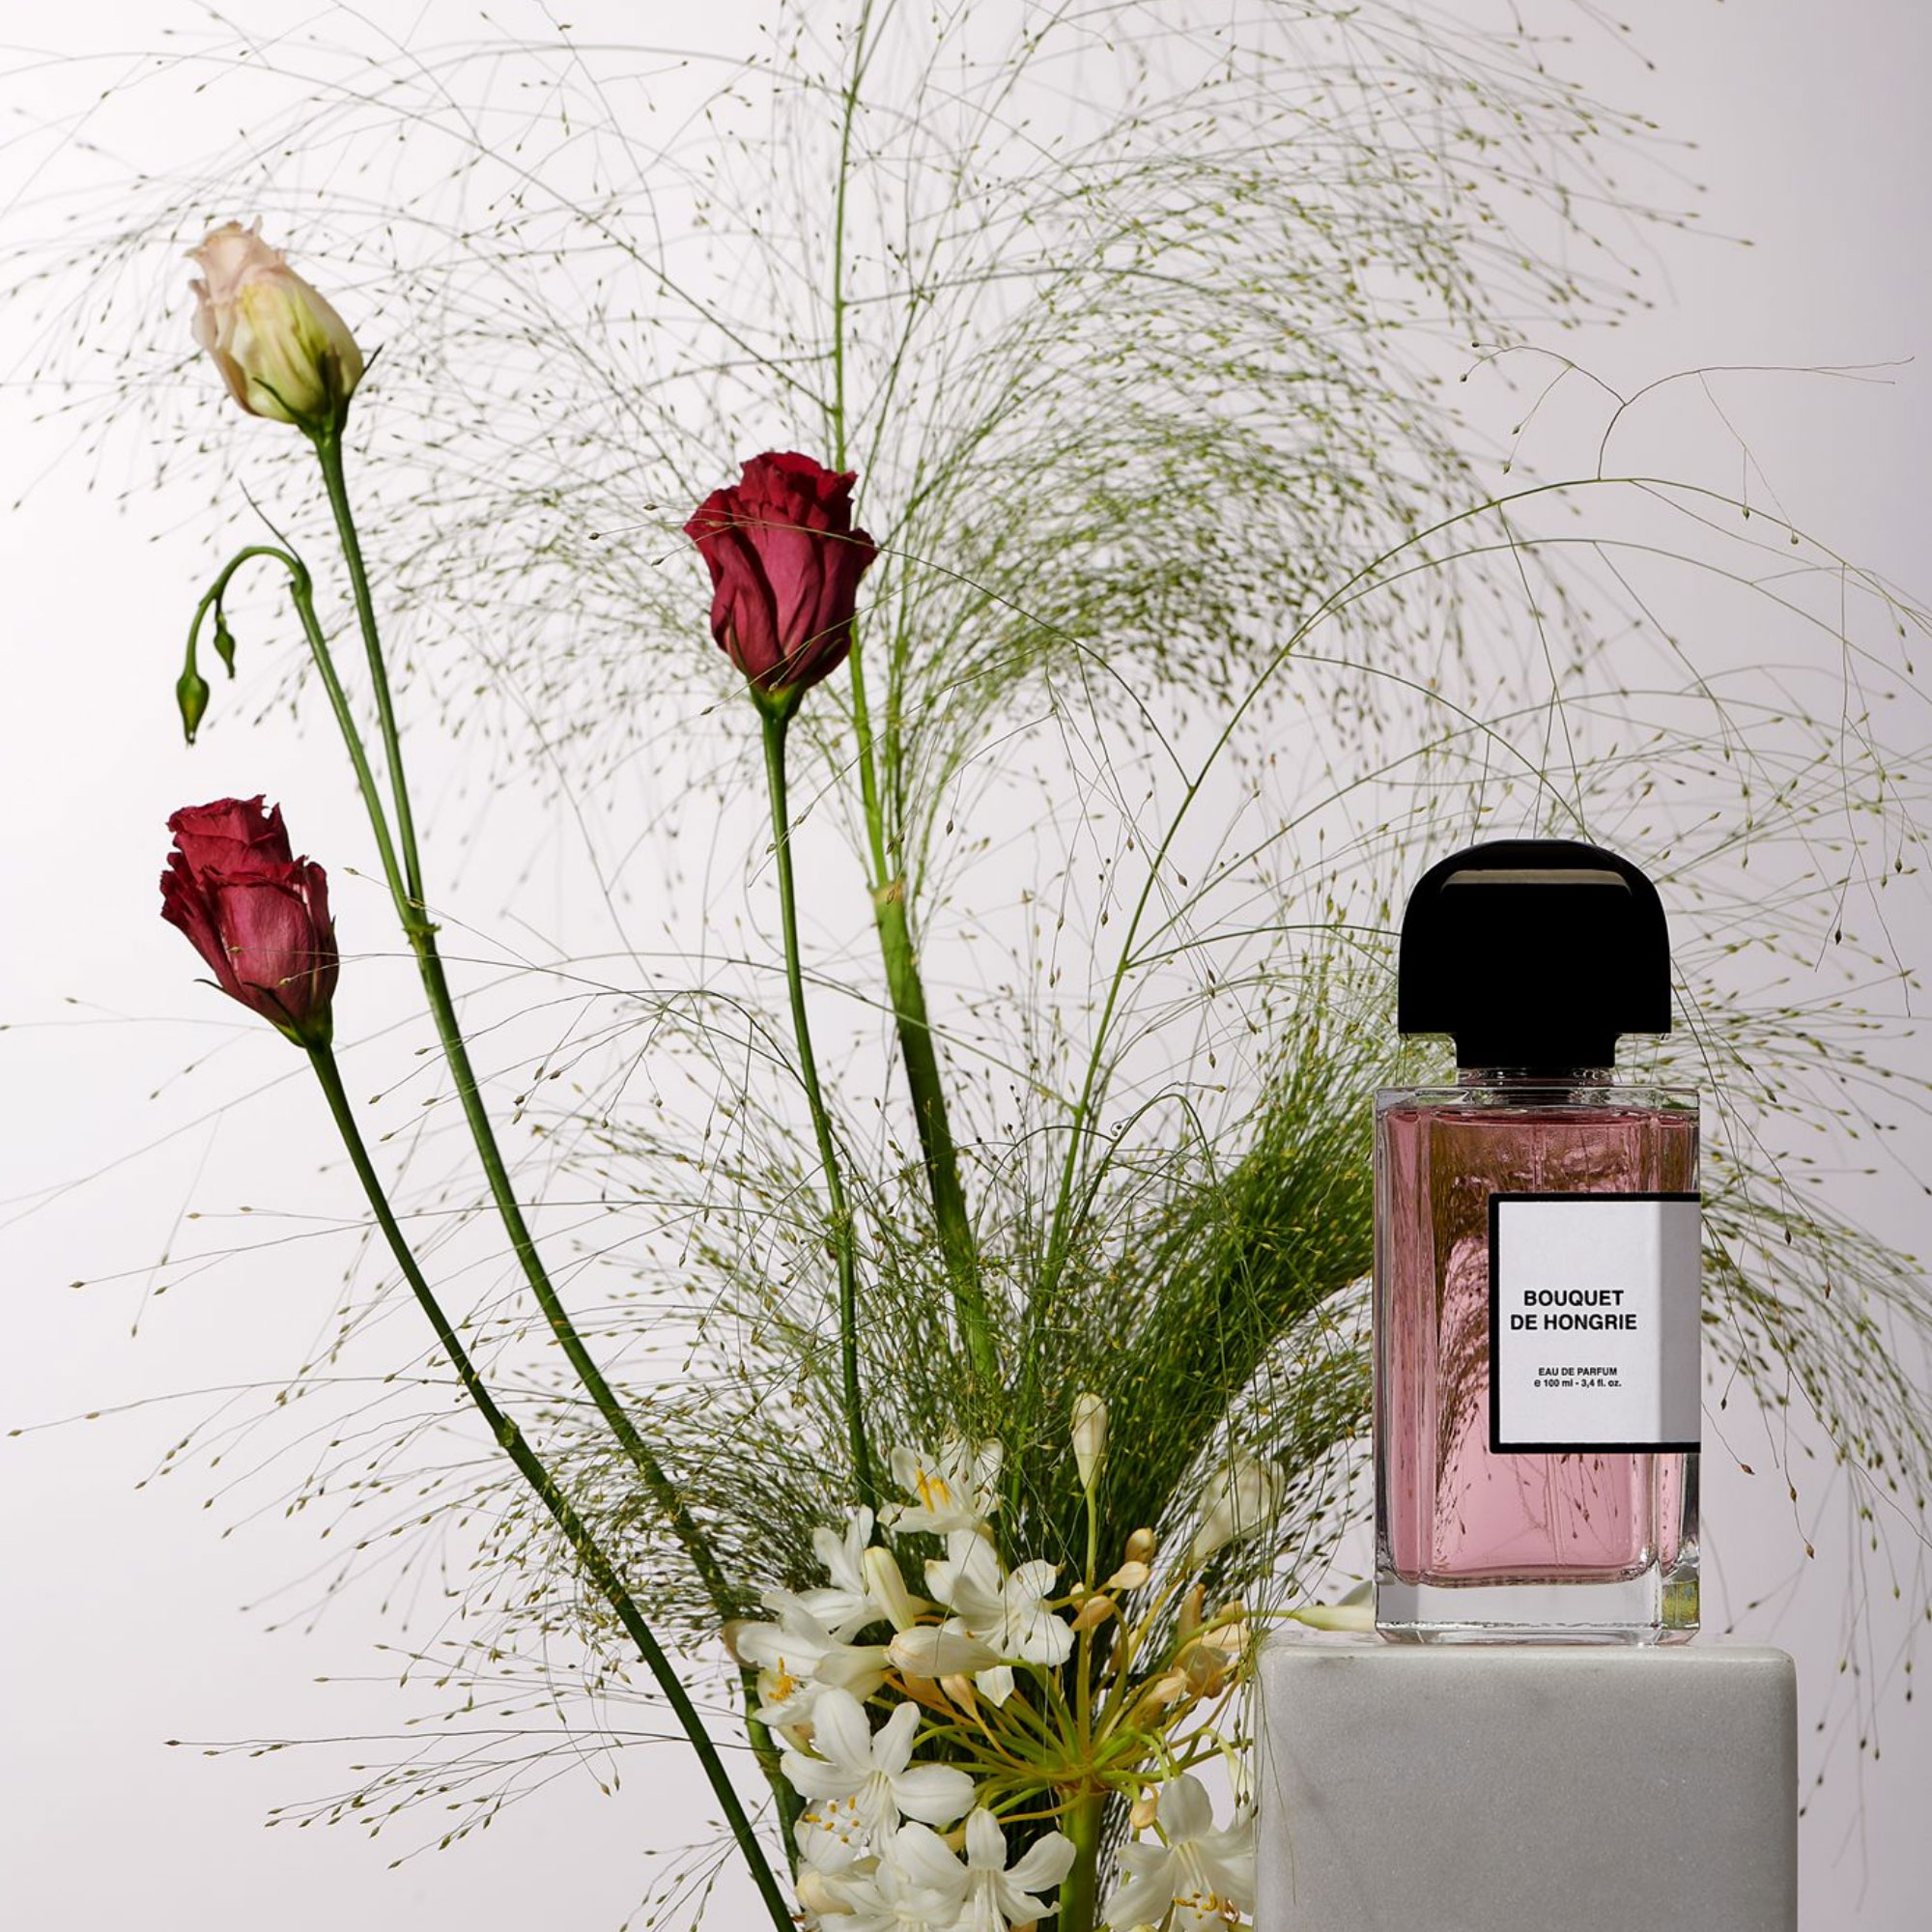 bouquet de hongrie fragrance by bdk parfums with flowers